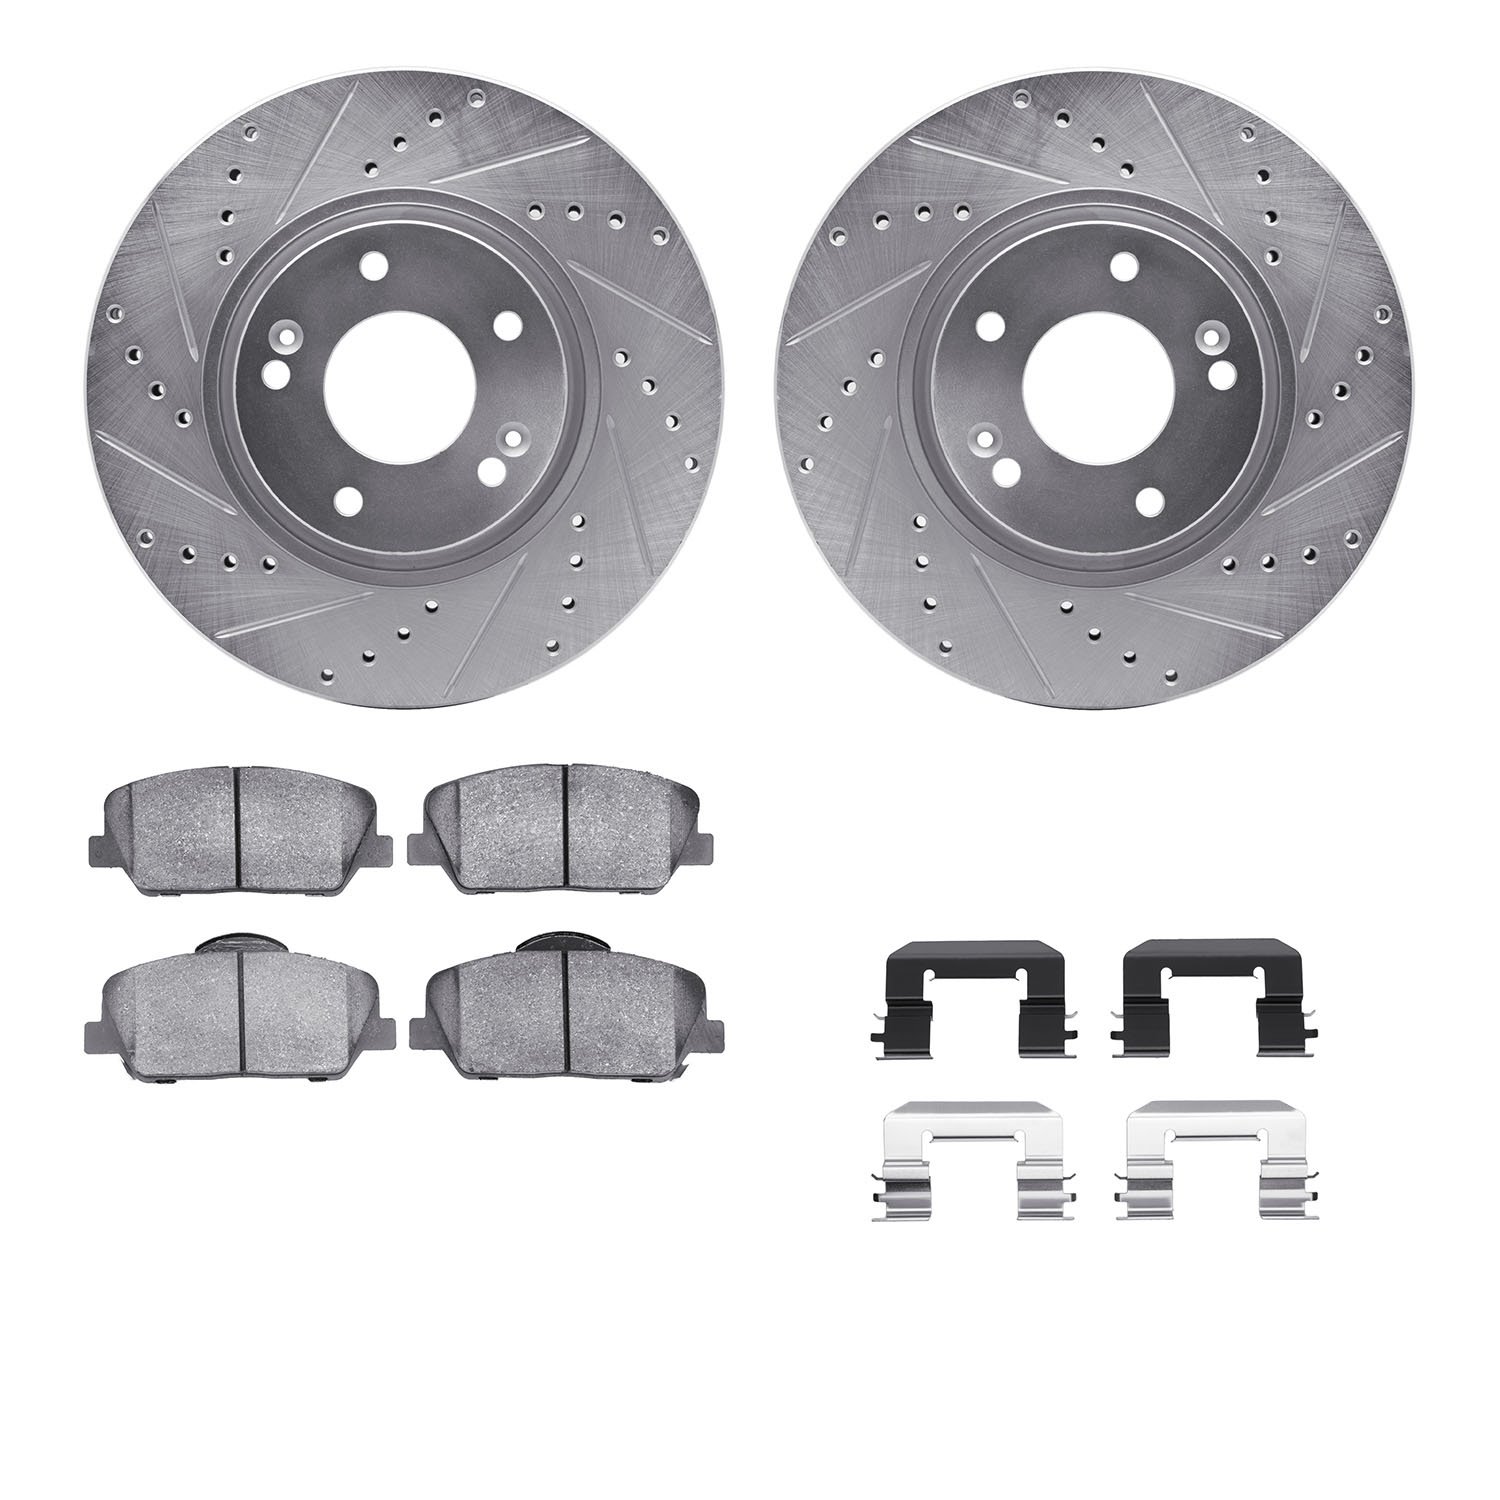 7312-03062 Drilled/Slotted Brake Rotor with 3000-Series Ceramic Brake Pads Kit & Hardware [Silver], 2013-2015 Kia/Hyundai/Genesi